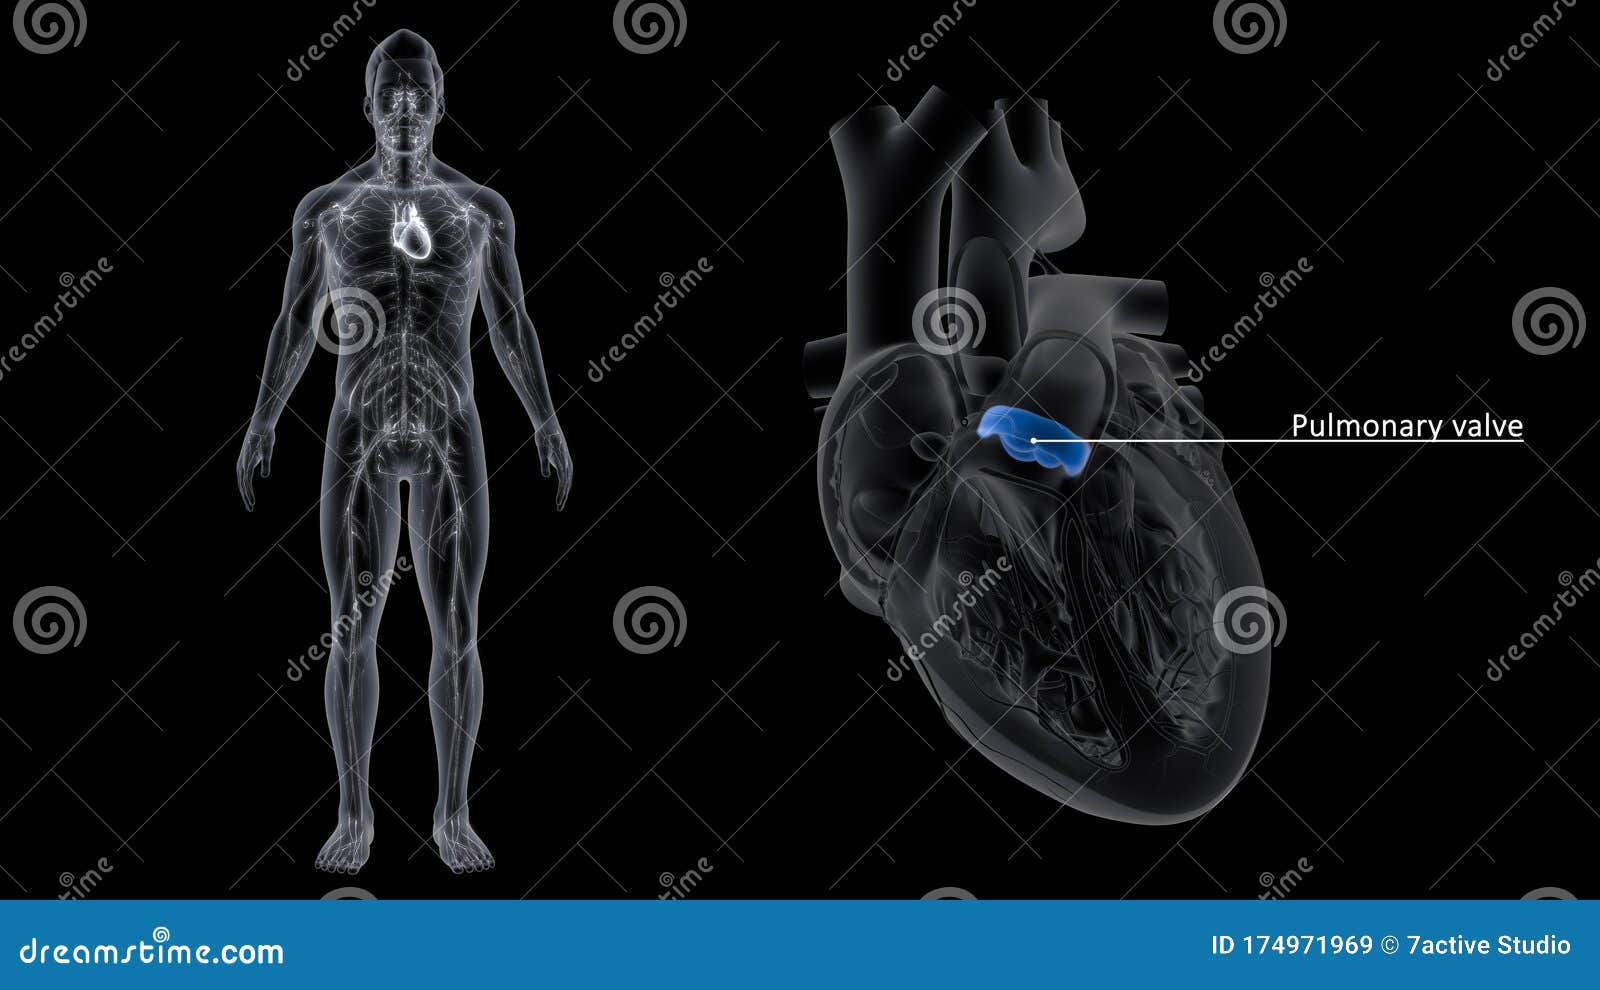 pulmonary valve of the heart